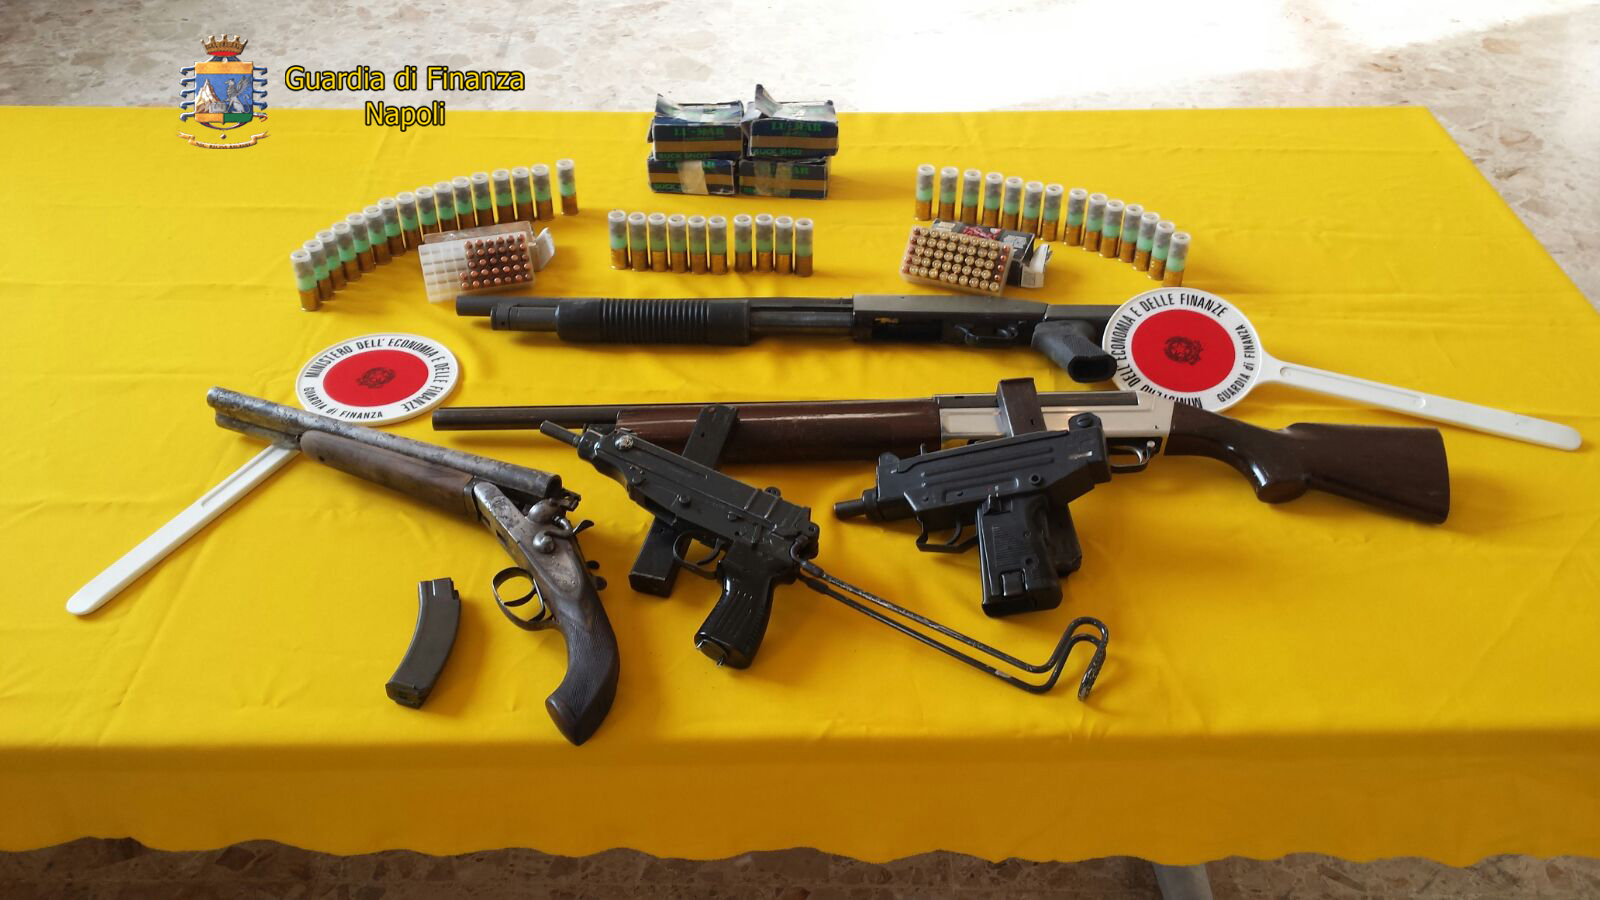  Miano, scoperte in un casolare armi e munizioni della camorra: arrestato 50enne